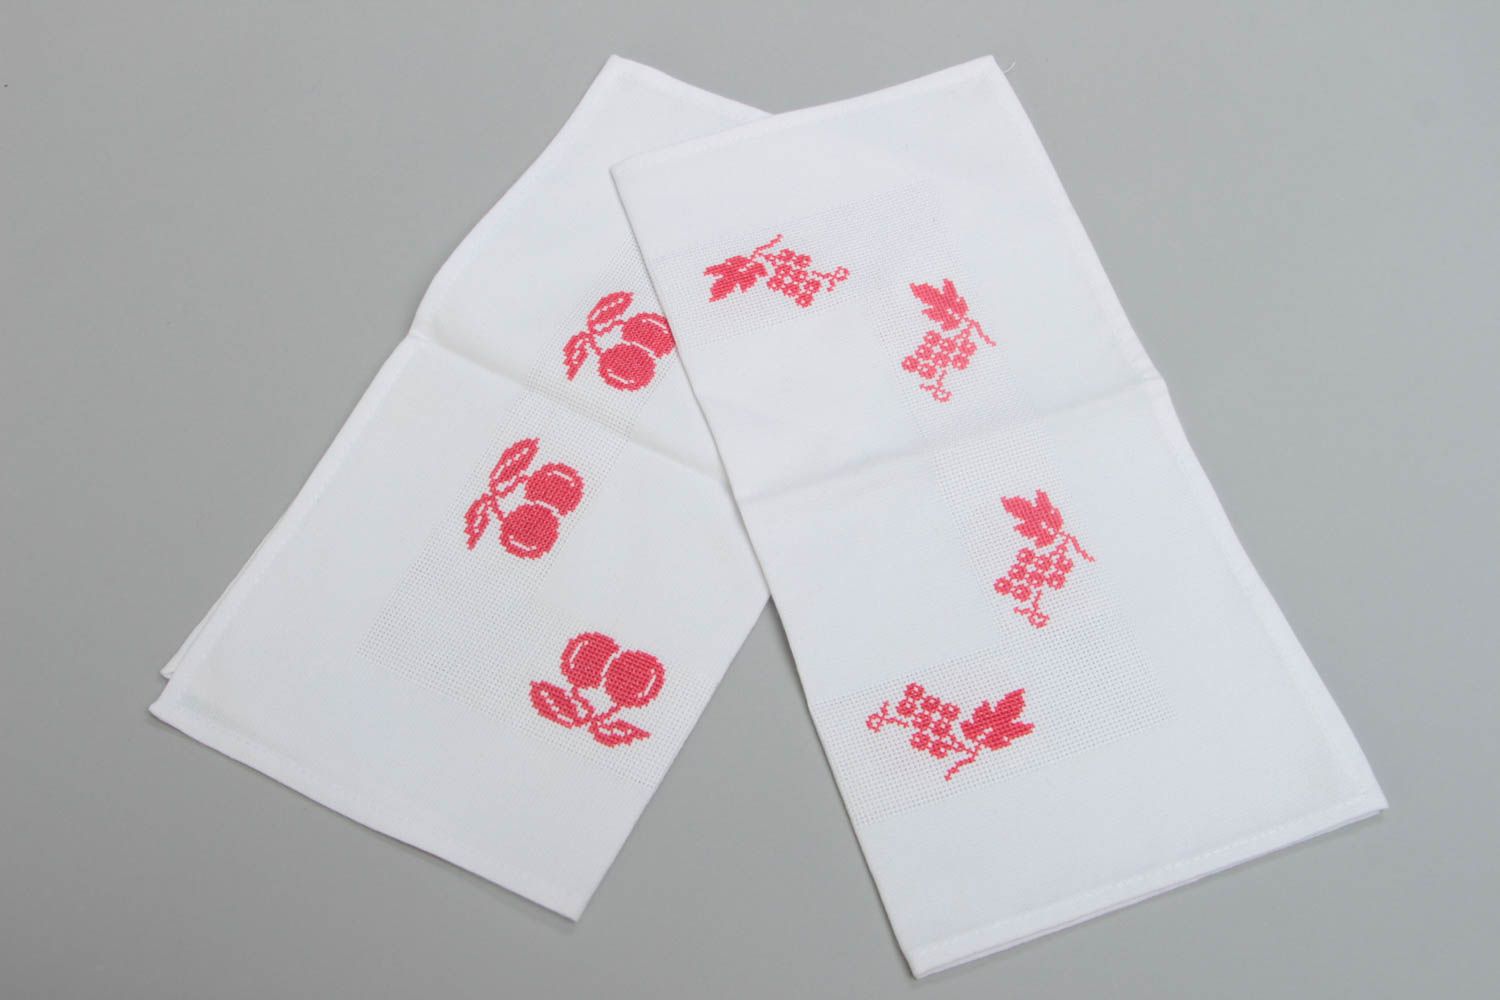 Deux serviettes de table brodées belles blanches motif rouge faites main Cerises photo 4